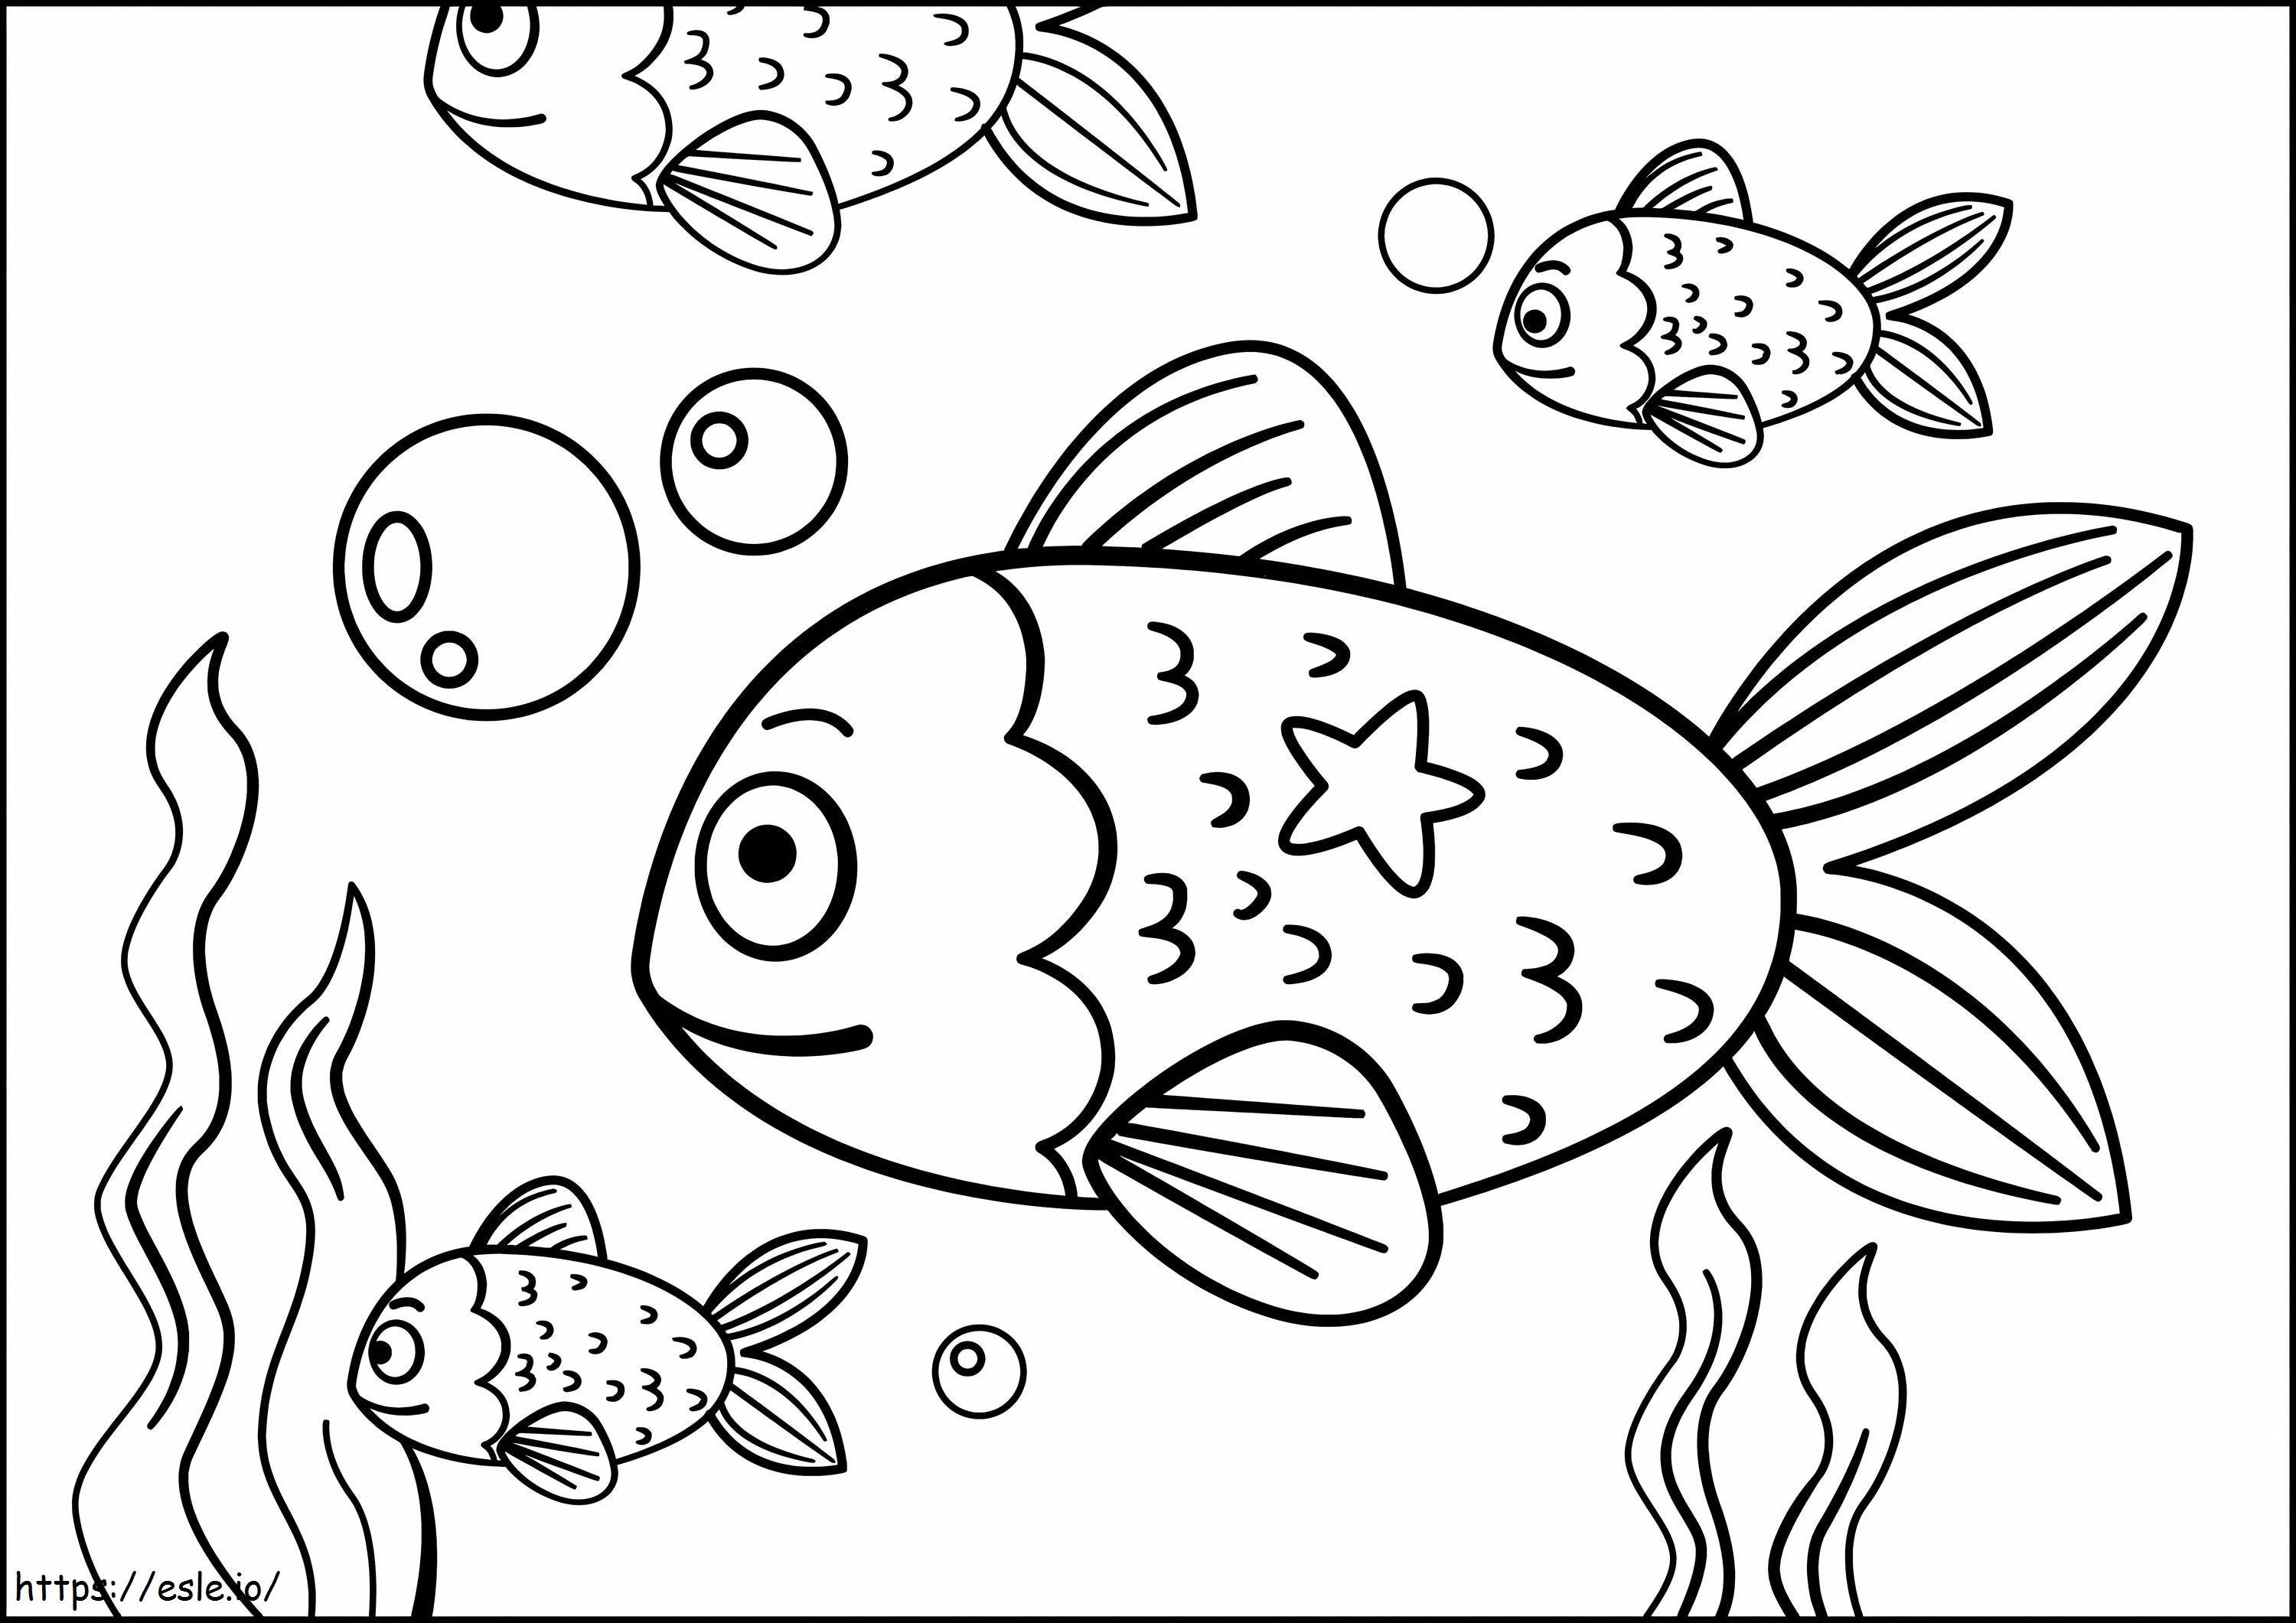 Quatro peixes no mar para colorir